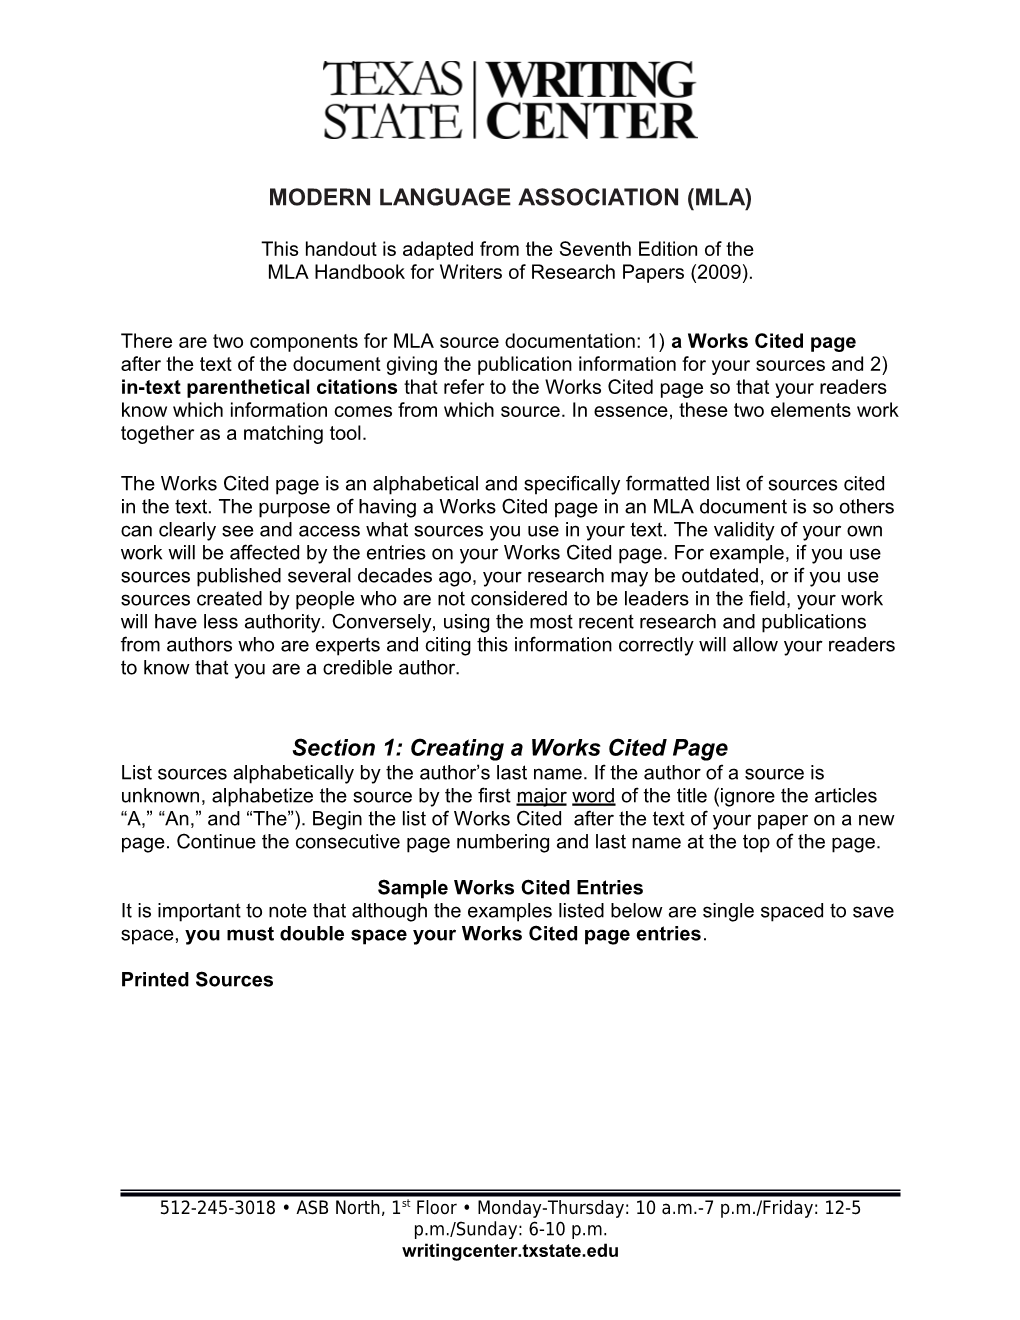 Modern Language Association (Mla)